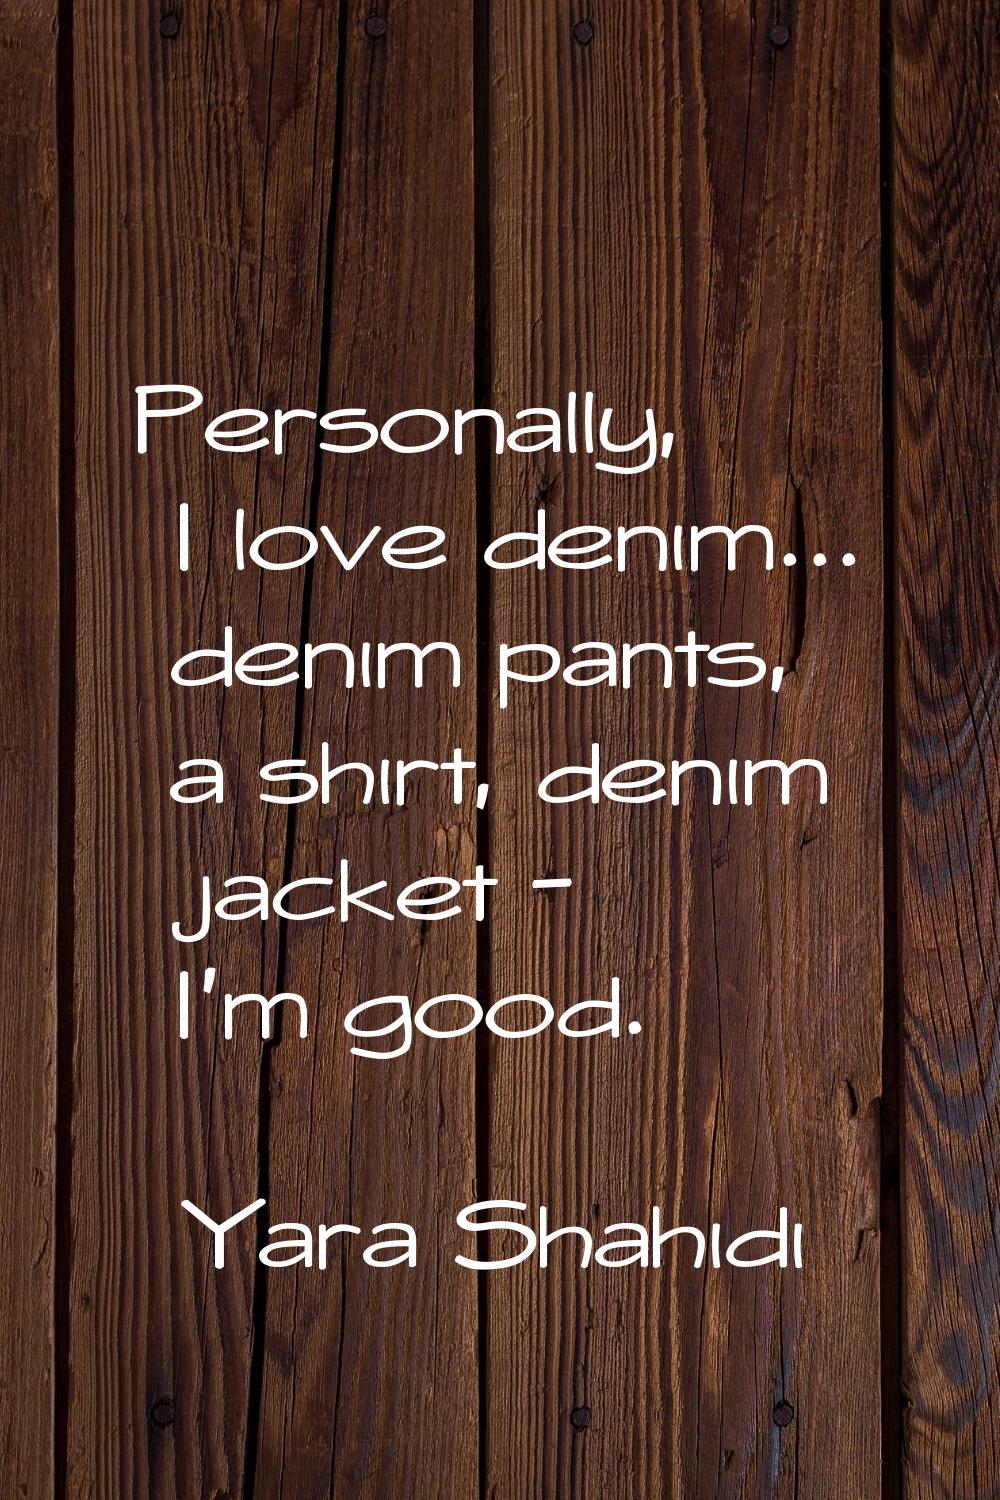 Personally, I love denim... denim pants, a shirt, denim jacket - I'm good.